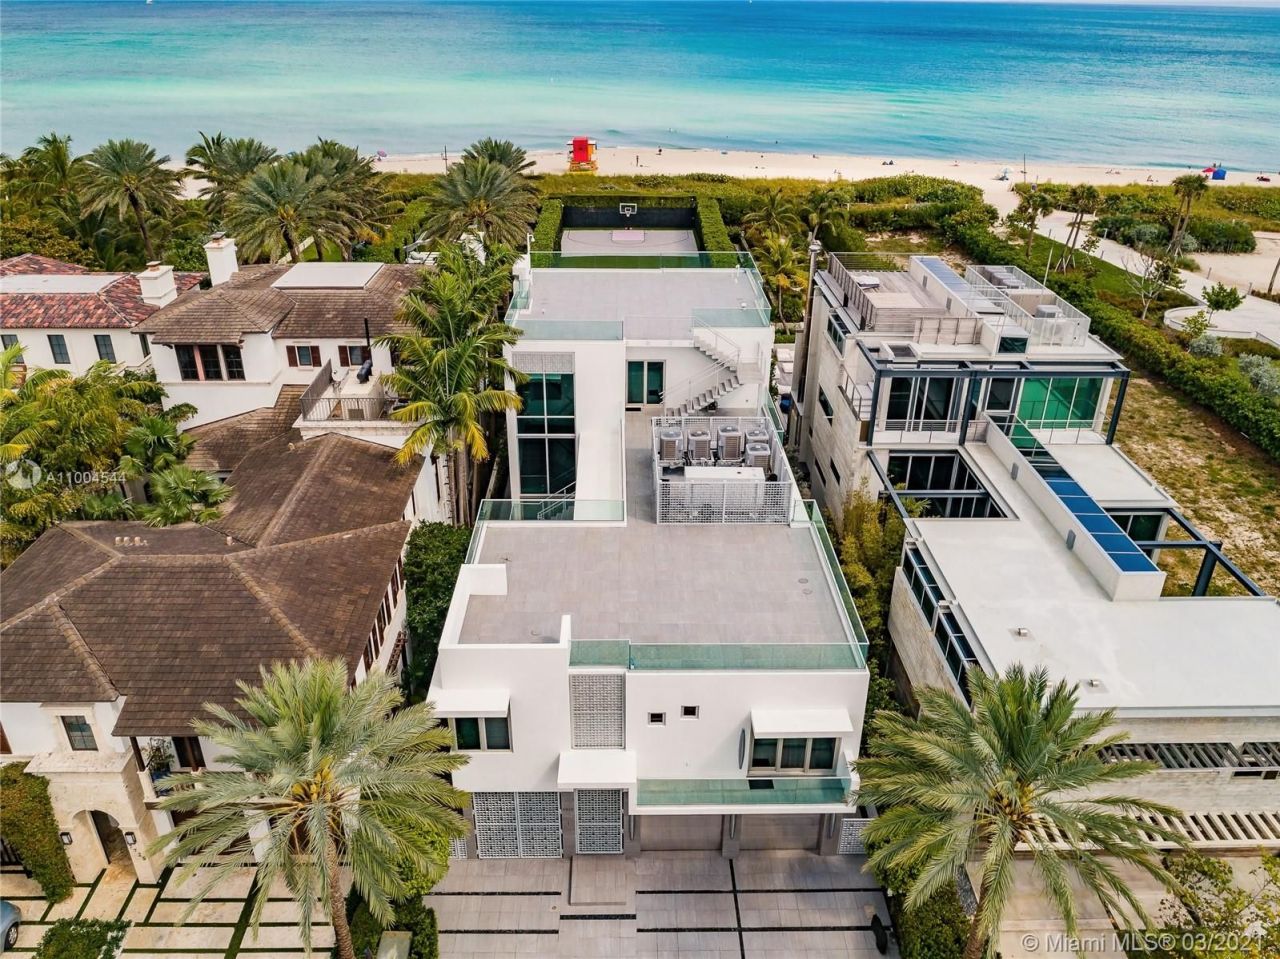 House in Miami, USA, 680 sq.m - picture 1